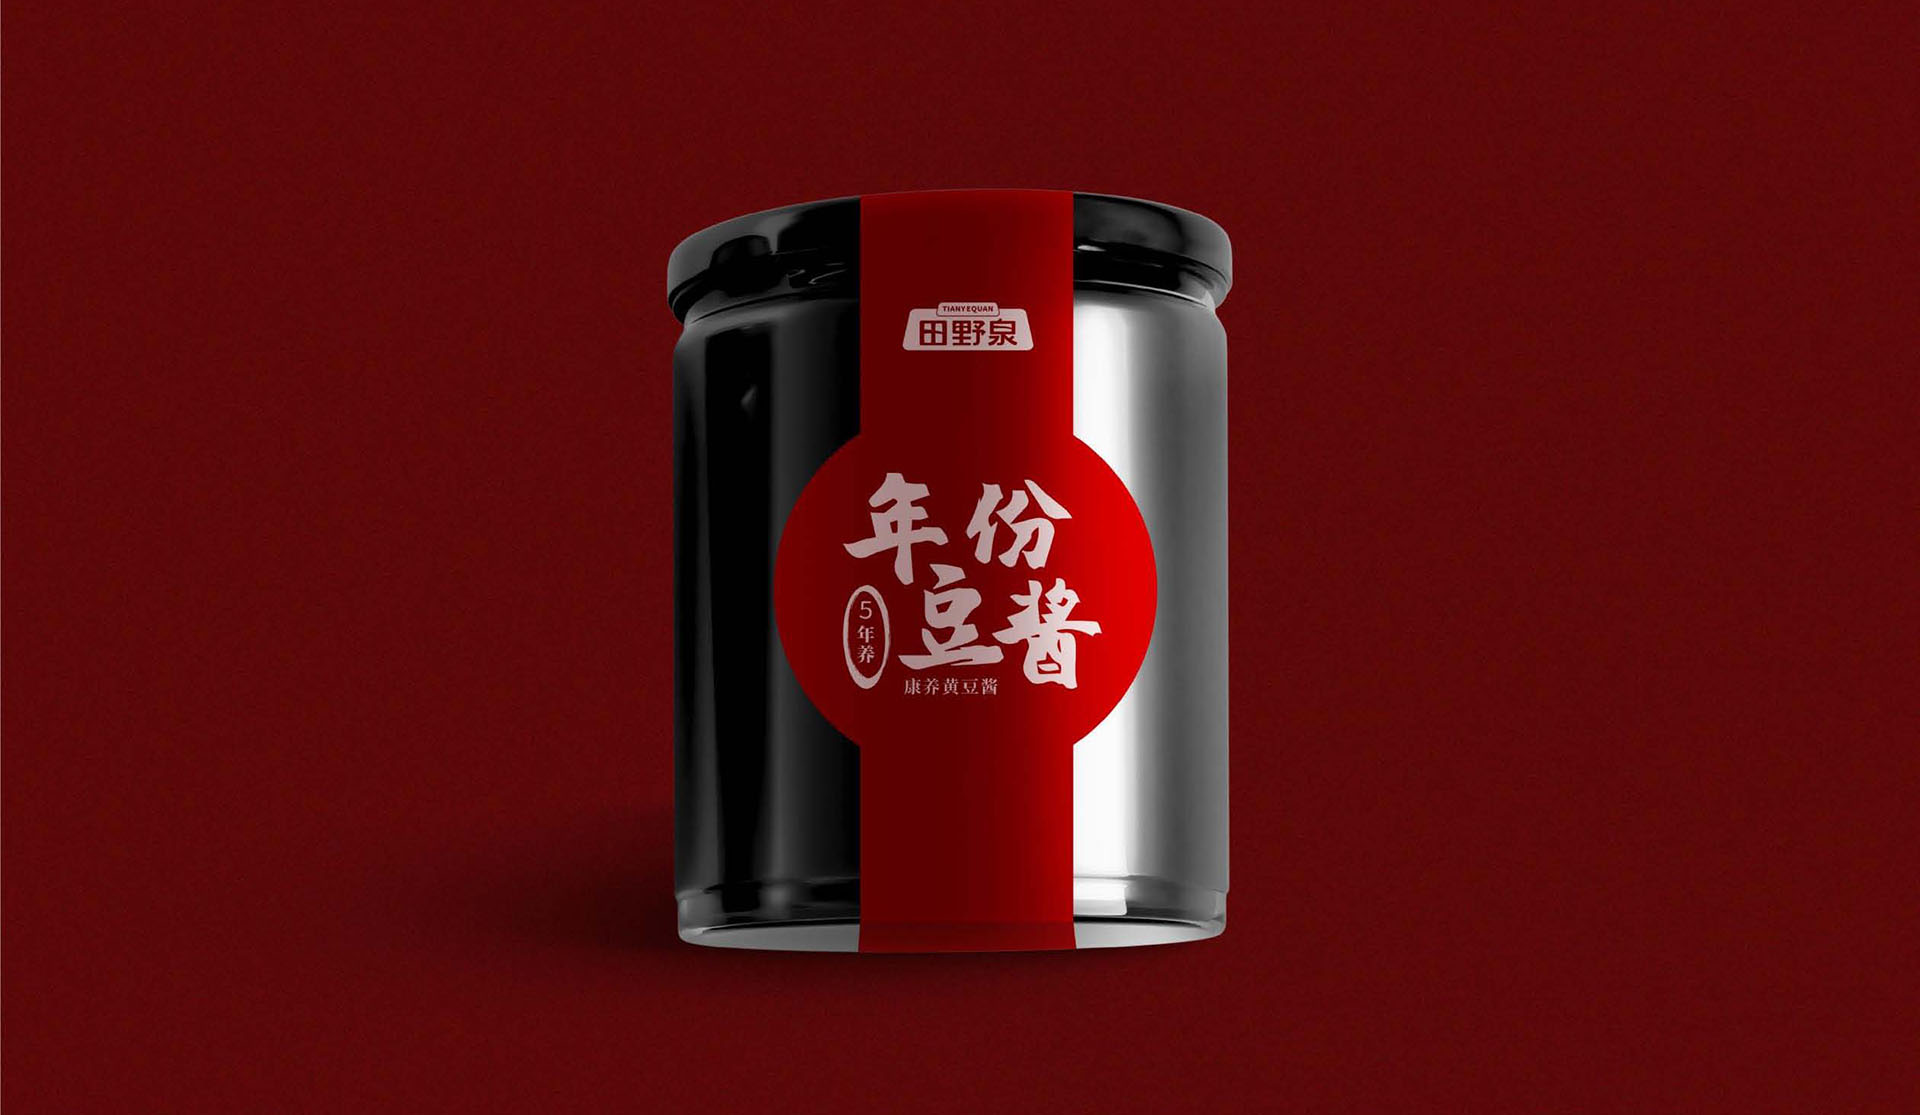 特产包装设计黑红色高端礼盒装款-东北田野泉年份酱